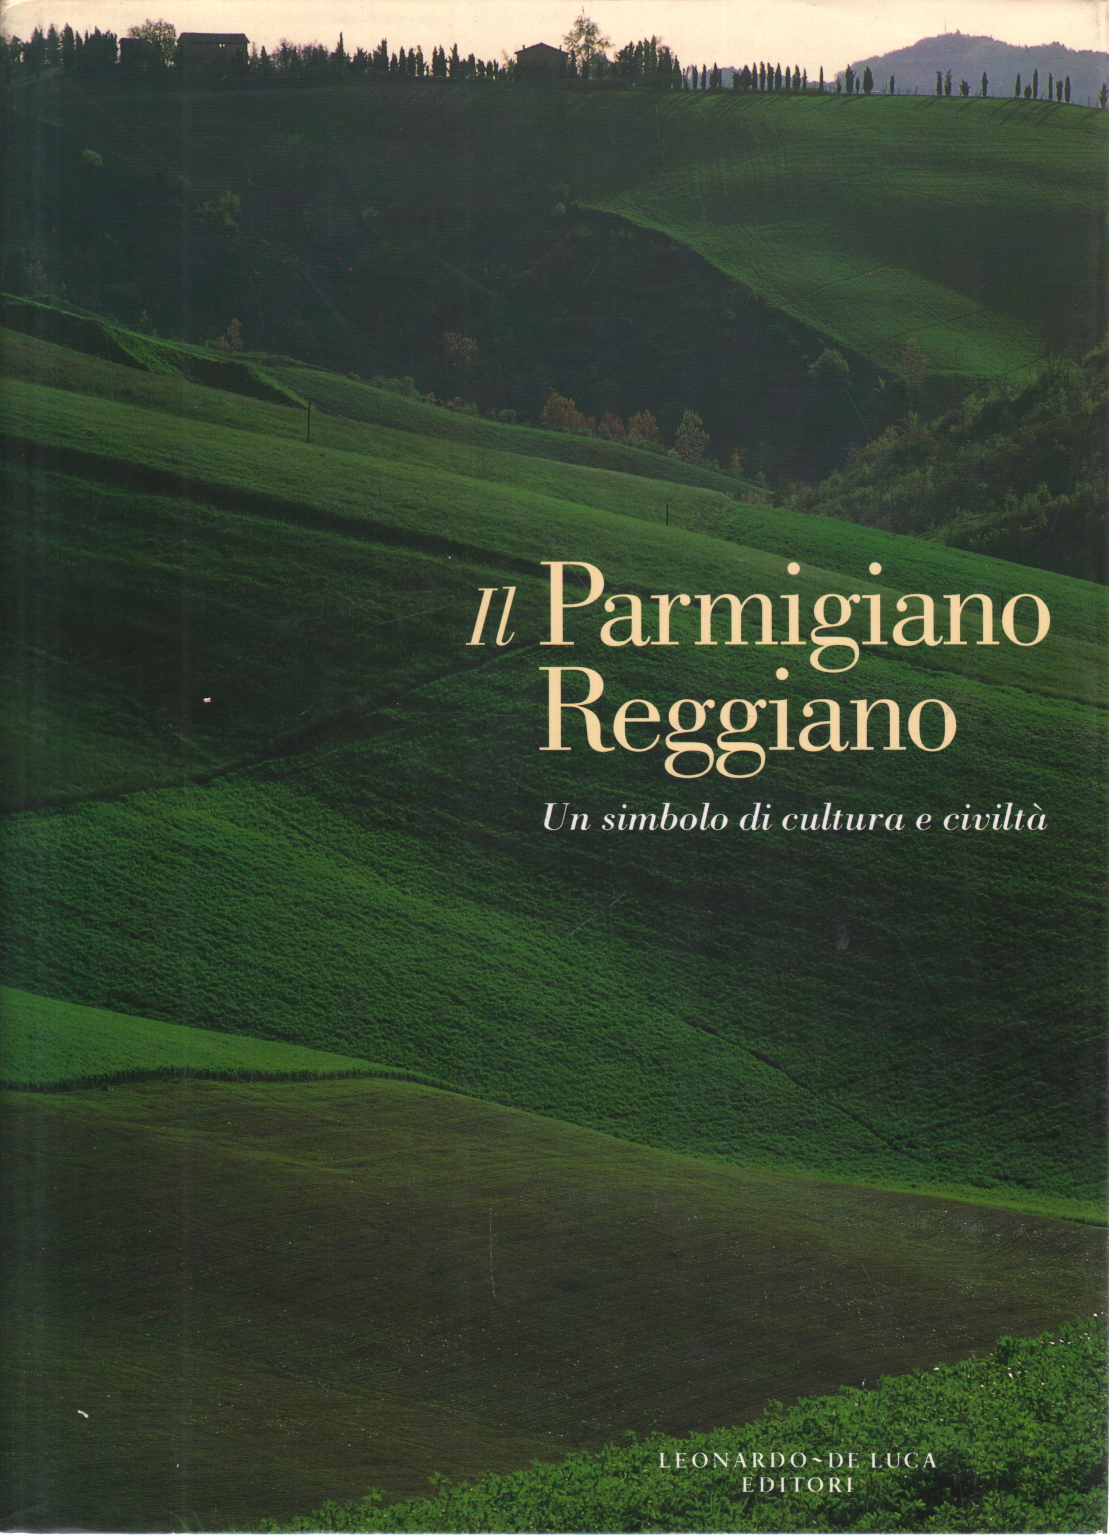 The Parmigiano Reggiano, AA.VV.